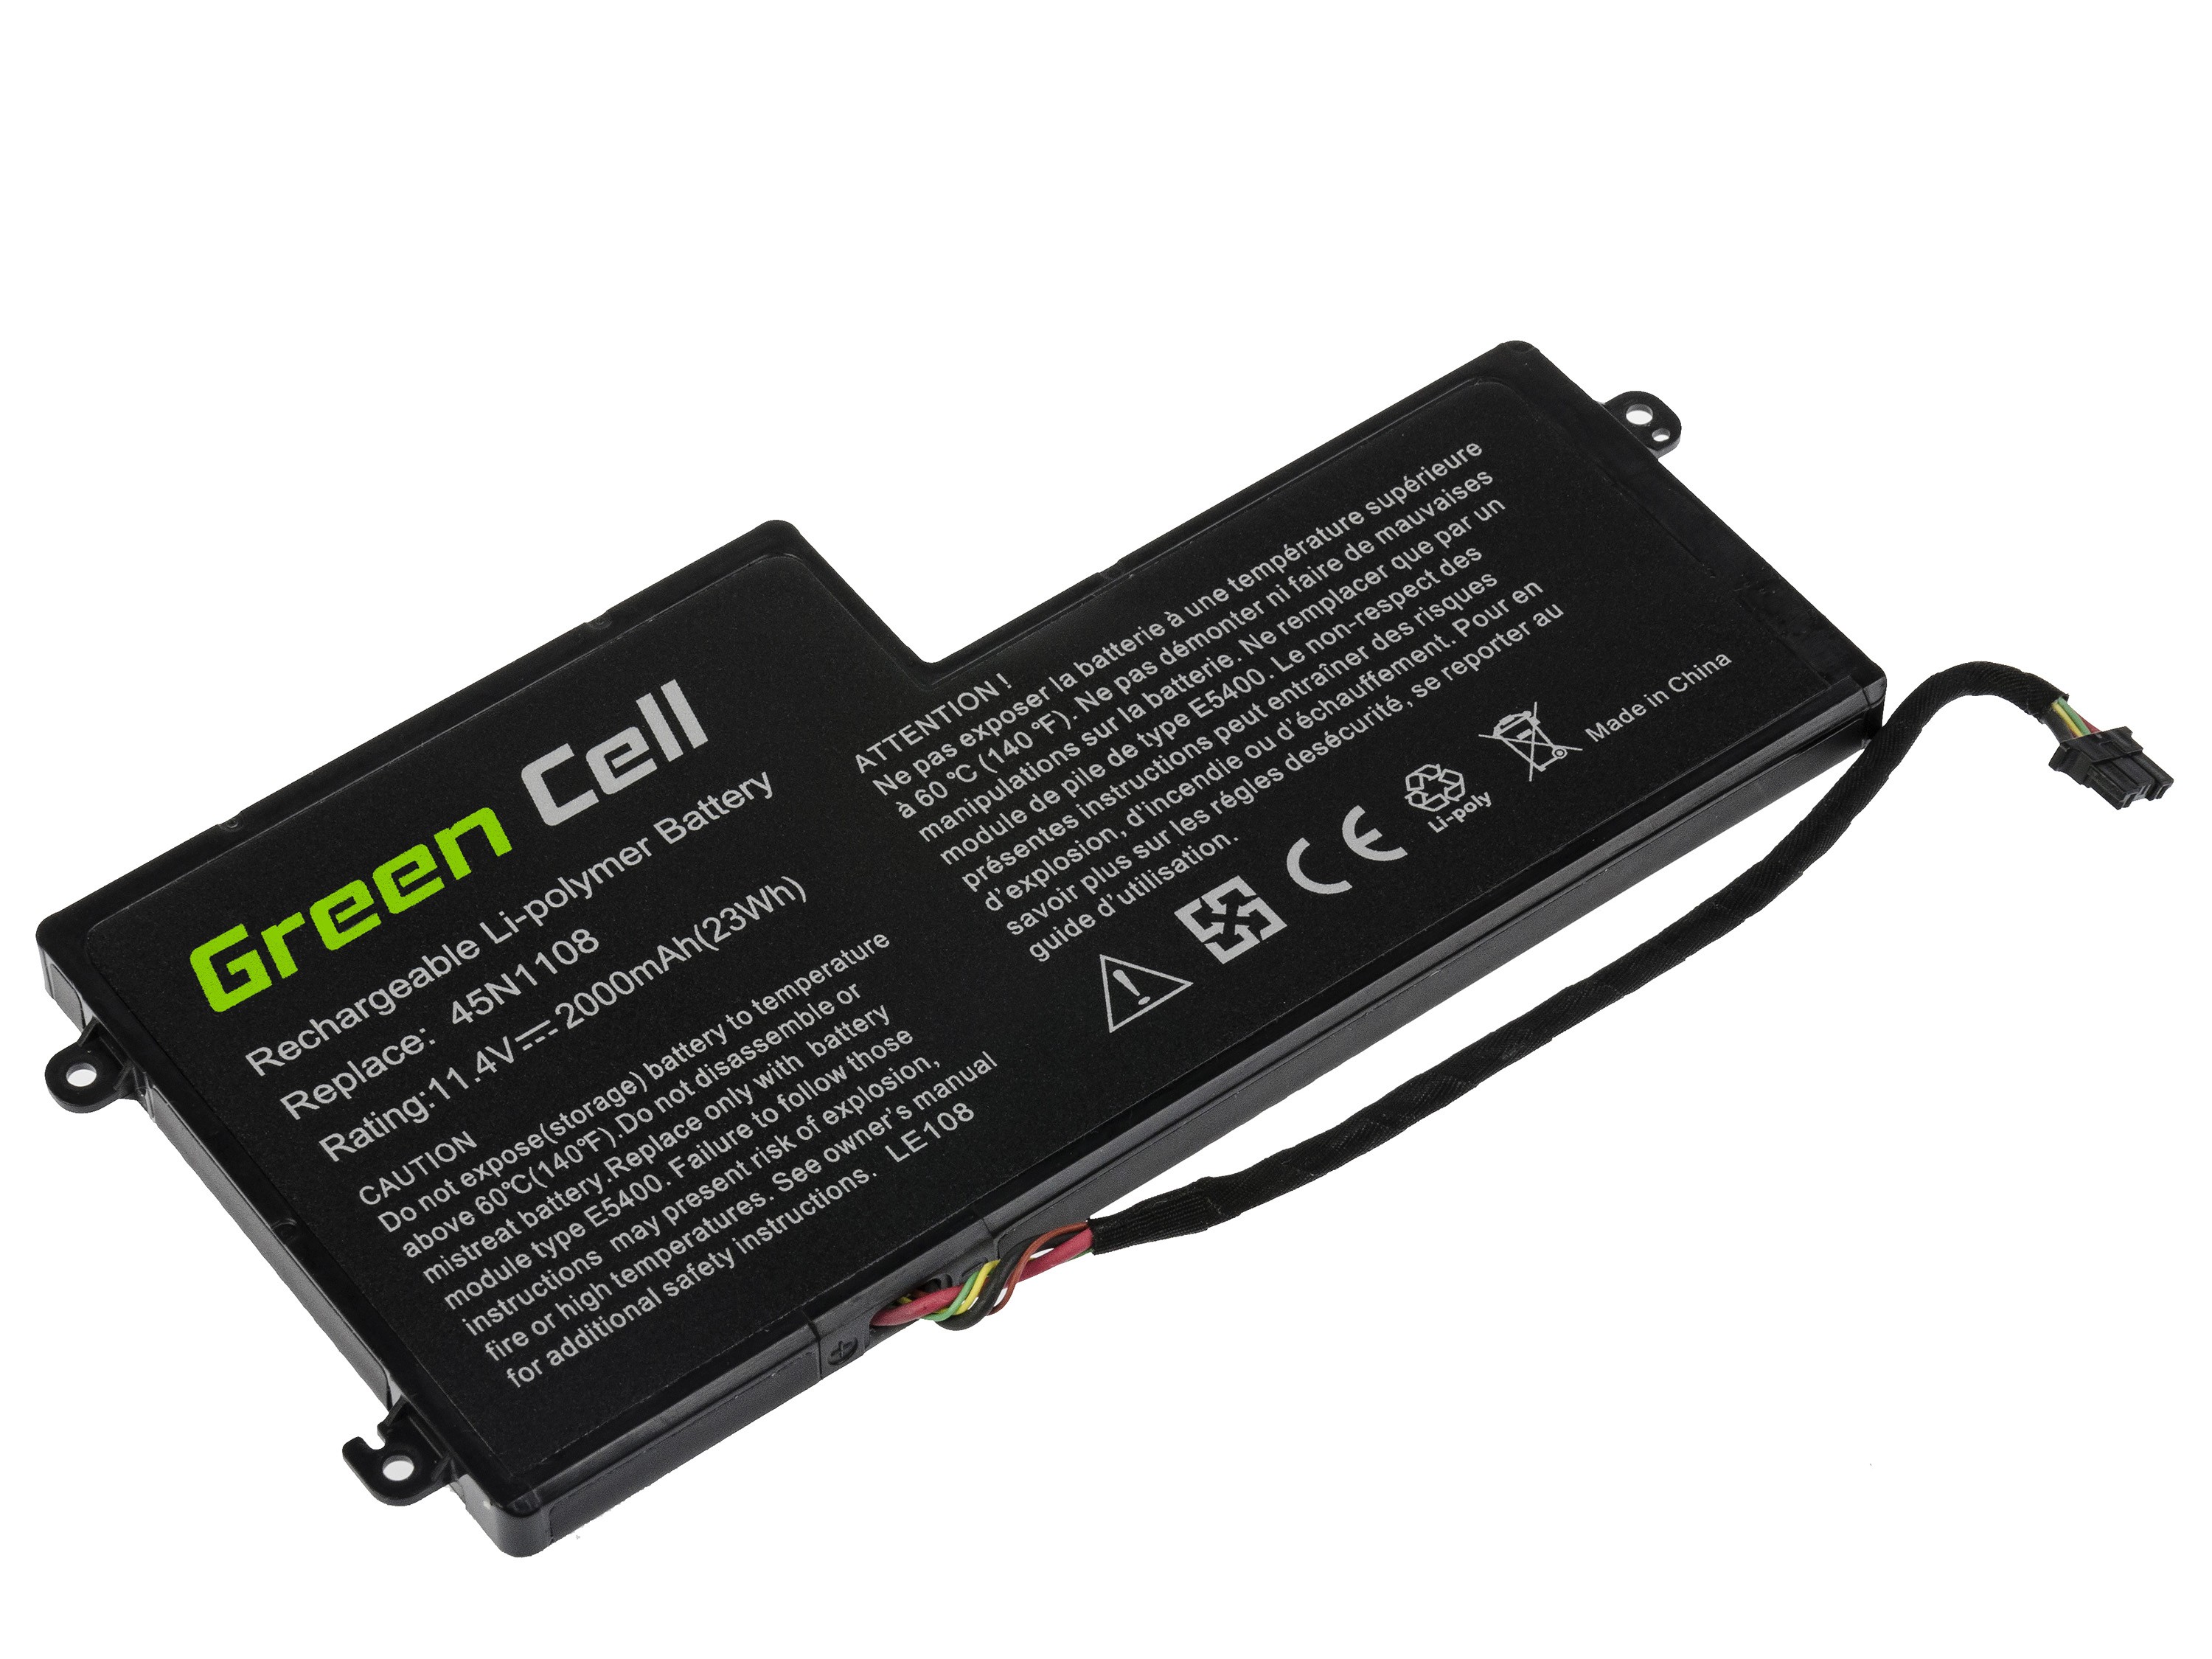 GREEN CELL Batterij voor Lenovo ThinkPad T440 T440s T450 T450s T460 X230s X240 X240s X250 X260 X270 / 11,4V 2000mAh